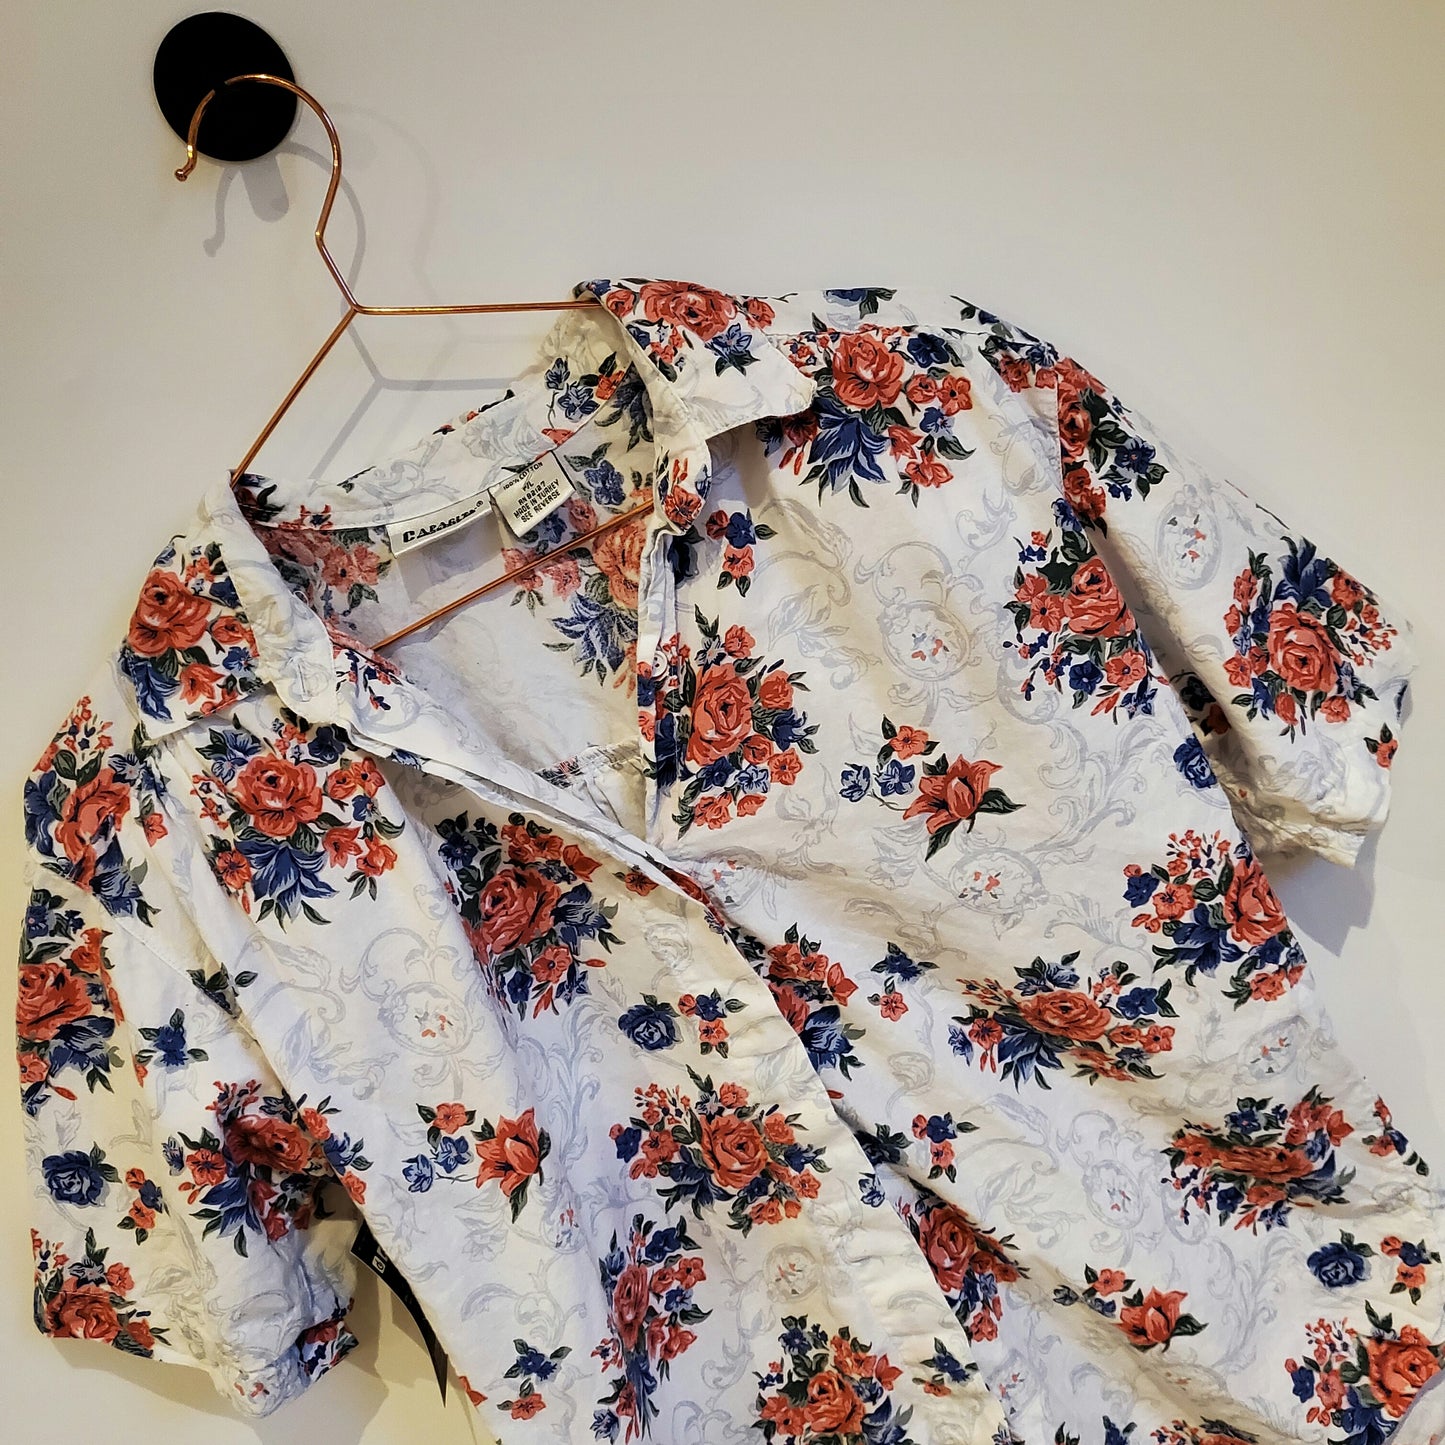 Vintage 80s Floral Shirt | Size L